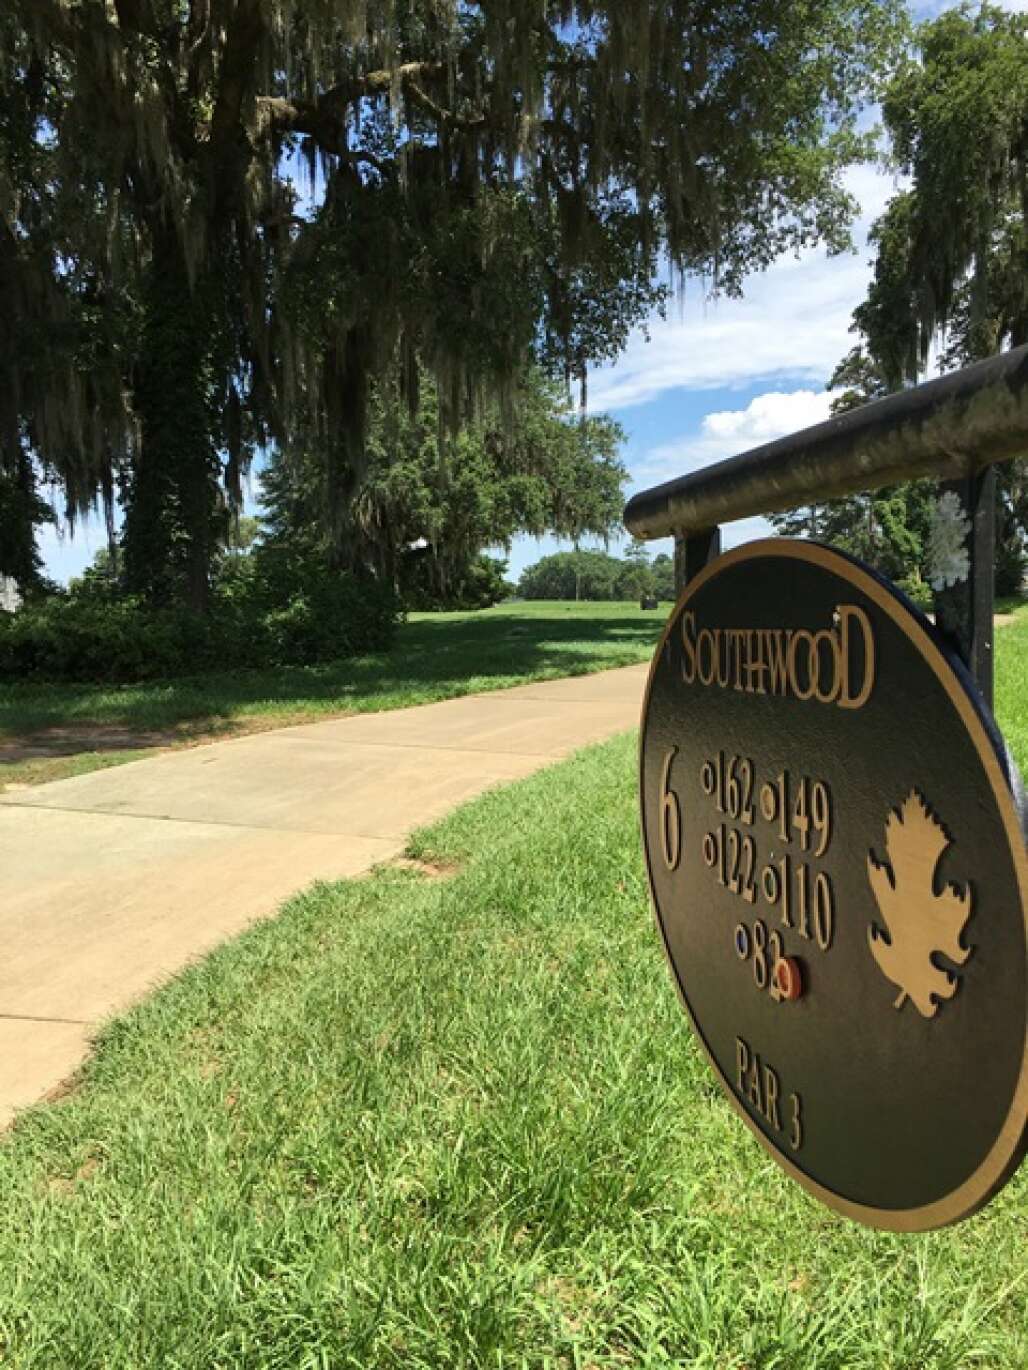 southwood golf club in north florida